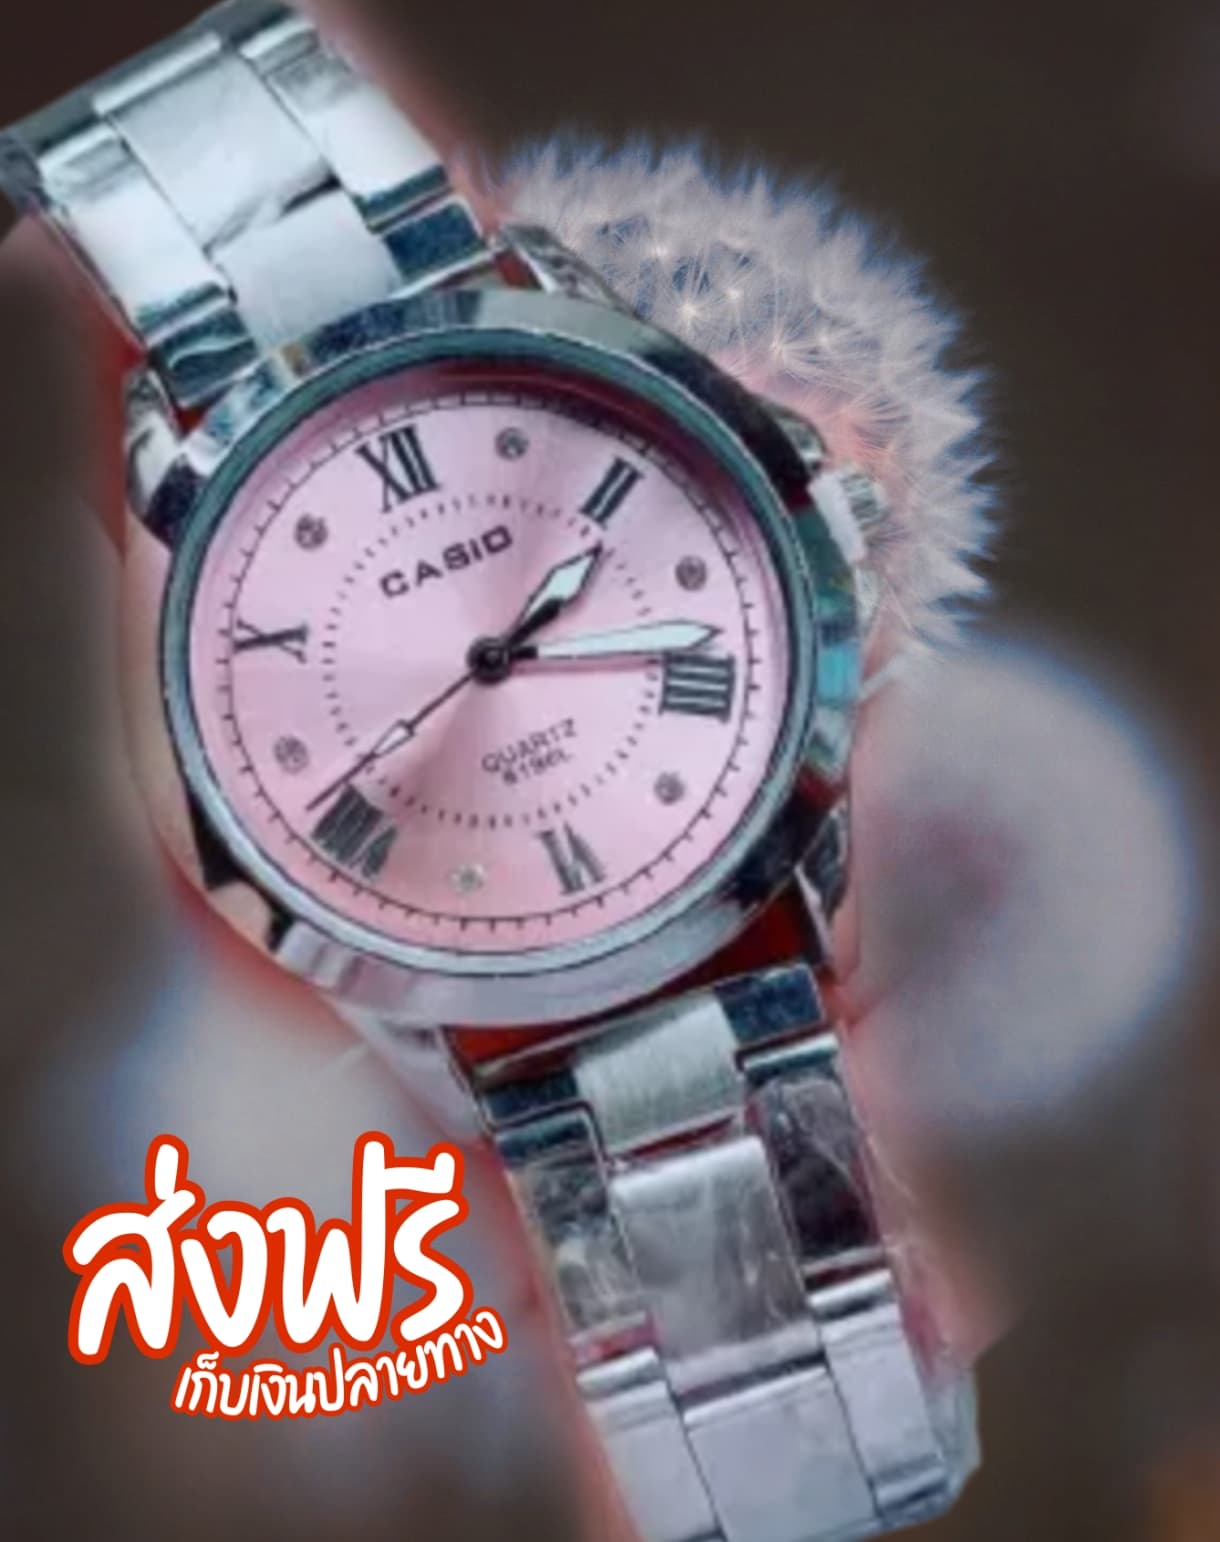 นาฬิกา คาสิโอ นาฬิกา ข้อมือ Casio คาสิโอ คาสิโอ นาฬิกาผู้หญิง นาฬิกาแฟชั่น ใส่ทำงาน ใส่ไปเรียน หรูหรา ผู้หญิง แฟชั่น สวย นาฬิกา ของต้องมี